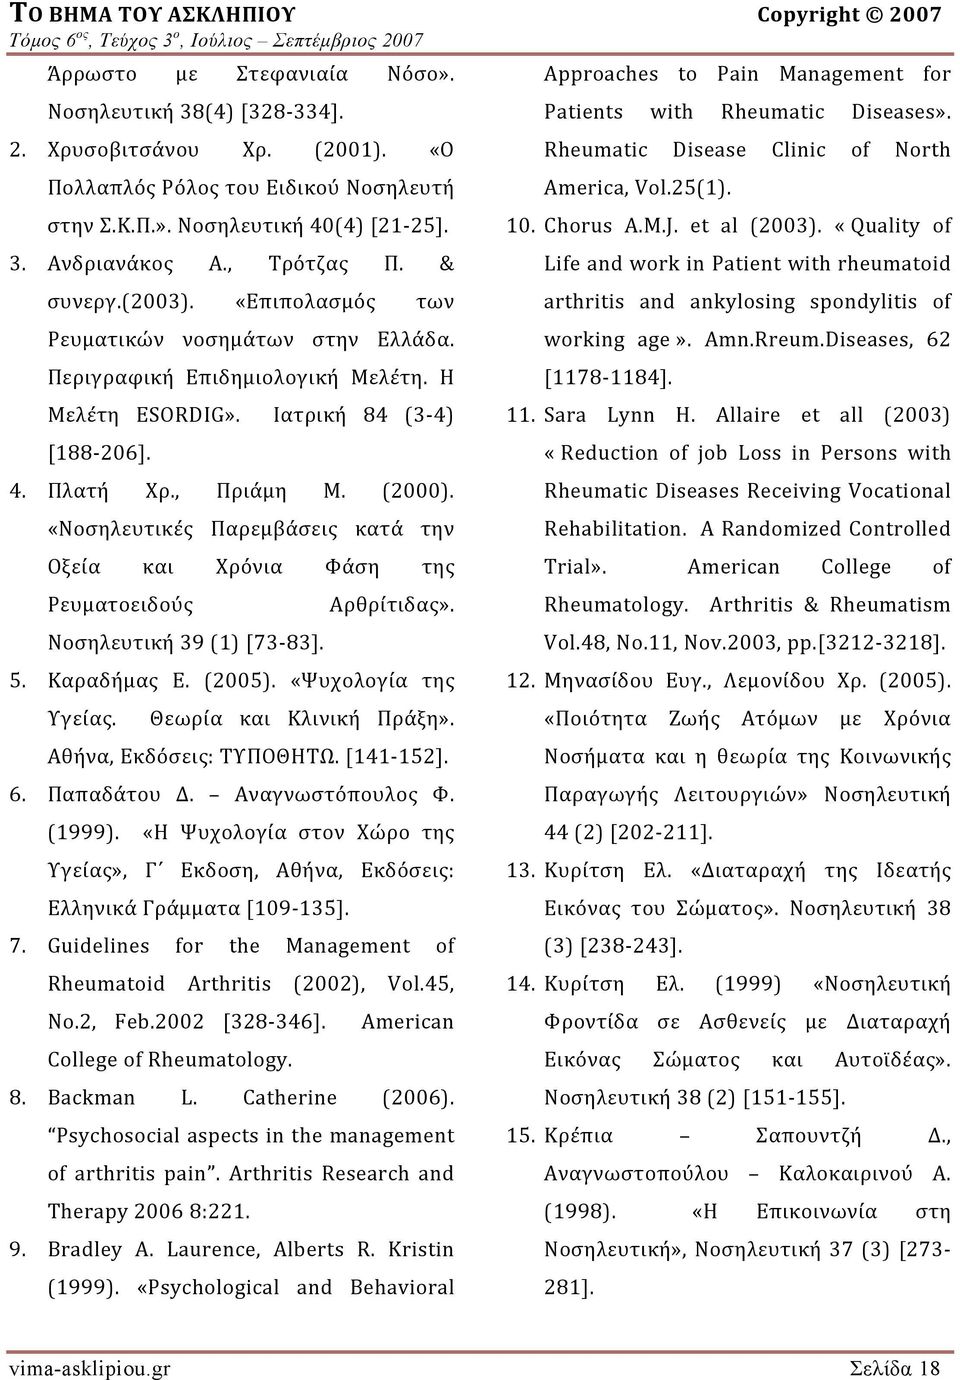 , Πριάμη Μ. (2000). «Νοσηλευτικές Παρεμβάσεις κατά την Οξεία και Χρόνια Φάση της Ρευματοειδούς Νοσηλευτική 39 (1) [73 83]. Αρθρίτιδας». 5. Καραδήμας Ε. (2005). «Ψυχολογία της Υγείας.